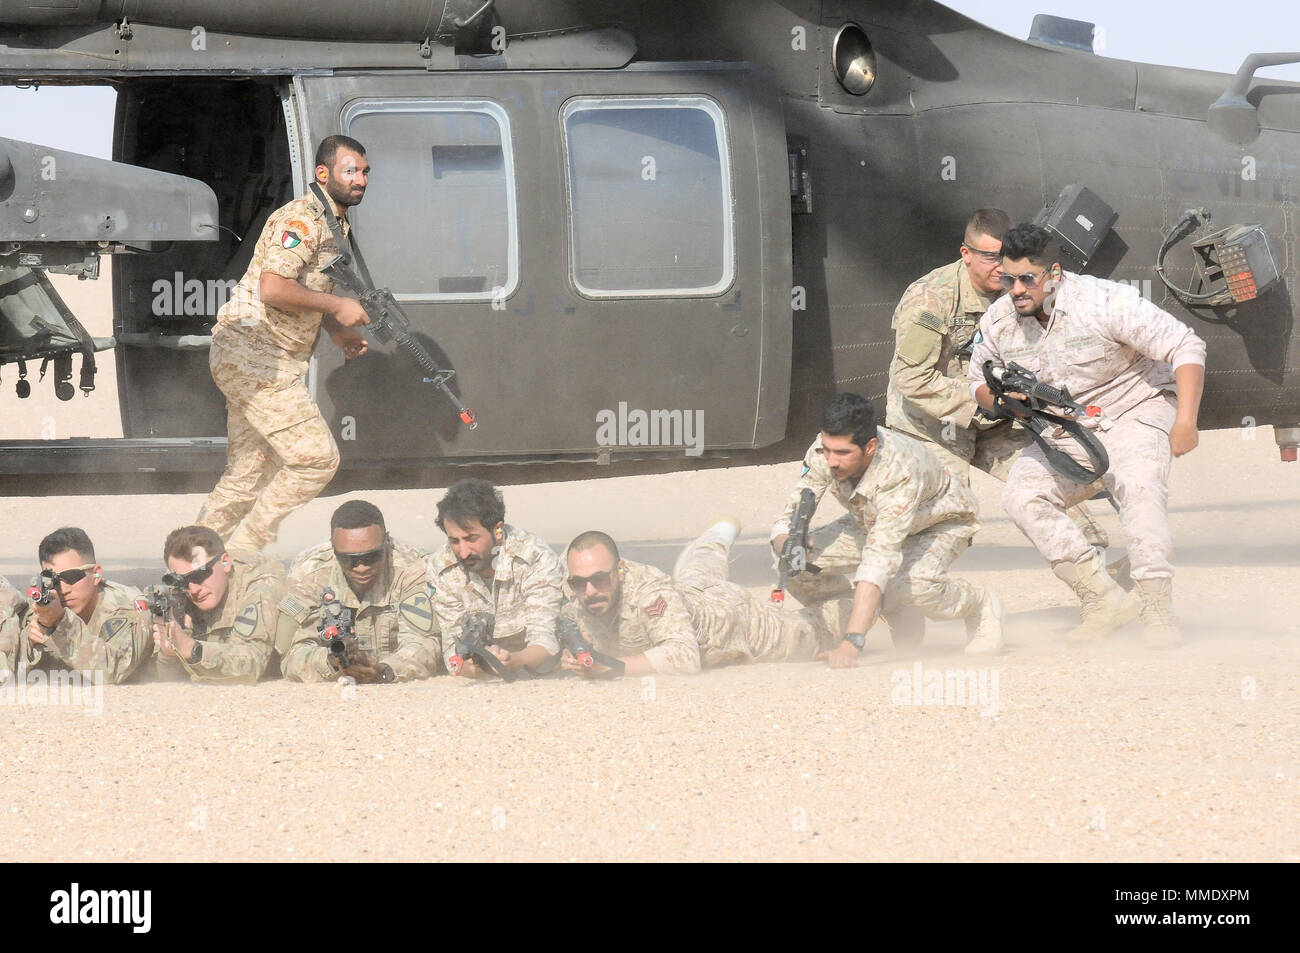 UDARI, Kuwait - USA und kuwaitische Kräfte schnell in Position bringen, da sie die Ausfahrt UH-60M Black Hawk Hubschrauber während heiße Ladung Training mit 1-147 Assault Helicopter Bataillon, Task Force Wraith, 29 Combat Aviation Brigade, und Soldaten der 3. Brigade Combat Team, 1.Kavallerie Division in Vorbereitung auf die Übung Wüste Wand in Urdari, Kuwait, der 4. Oktober 2017. Wüste Wand bestand aus Luft- und bodenoffensive Ausbildung und getestet, um die Interoperabilität der Kuwait Soldaten mit ihren US-amerikanischen Pendants. (Foto von der U.S. Army Staff Sgt. Isolda Reyes) Stockfoto